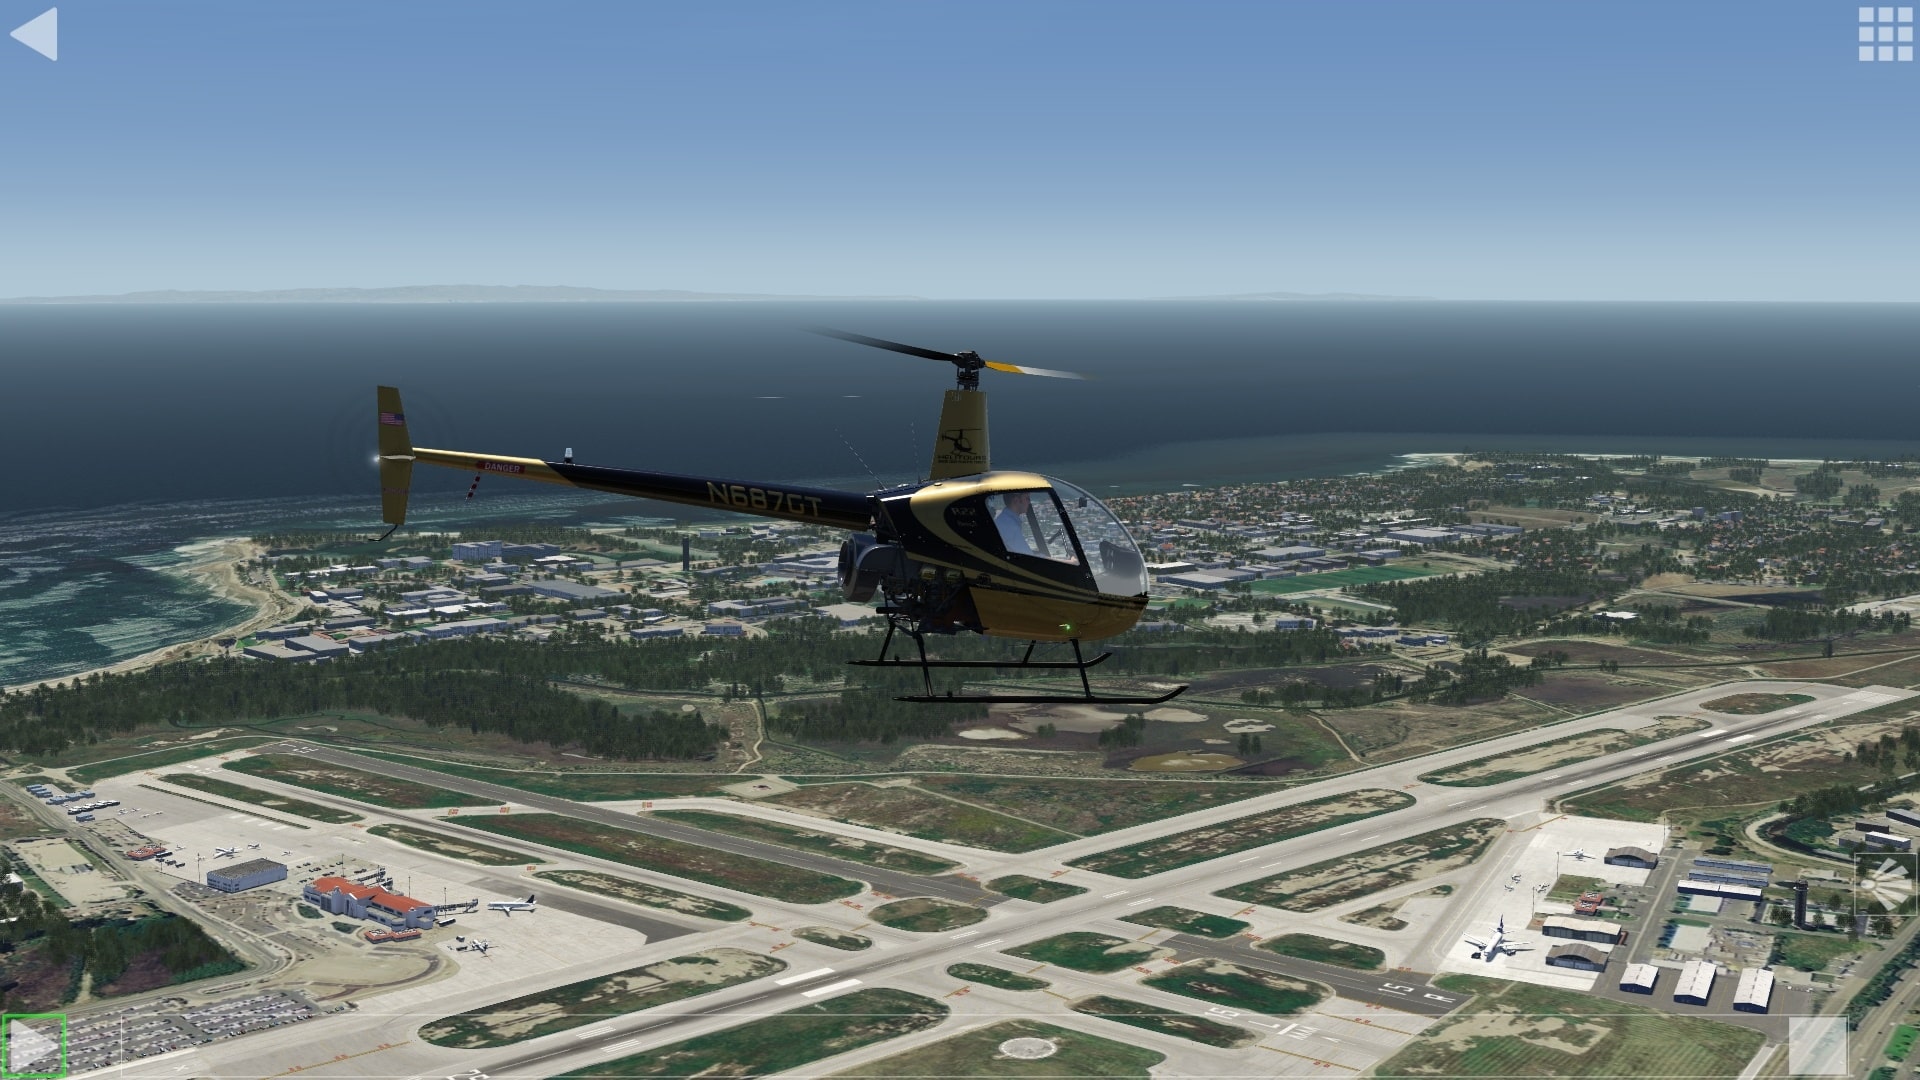 (Repetição do meu primeiro voo de helicóptero simulado desde a PlayStation 1 dias. Ainda estou orgulhoso. O modelo de voo da versão Aerofly FS do Robinson R22 também é utilizado na Suíça num dispositivo de treino de simulação de voo certificado pela EASA)